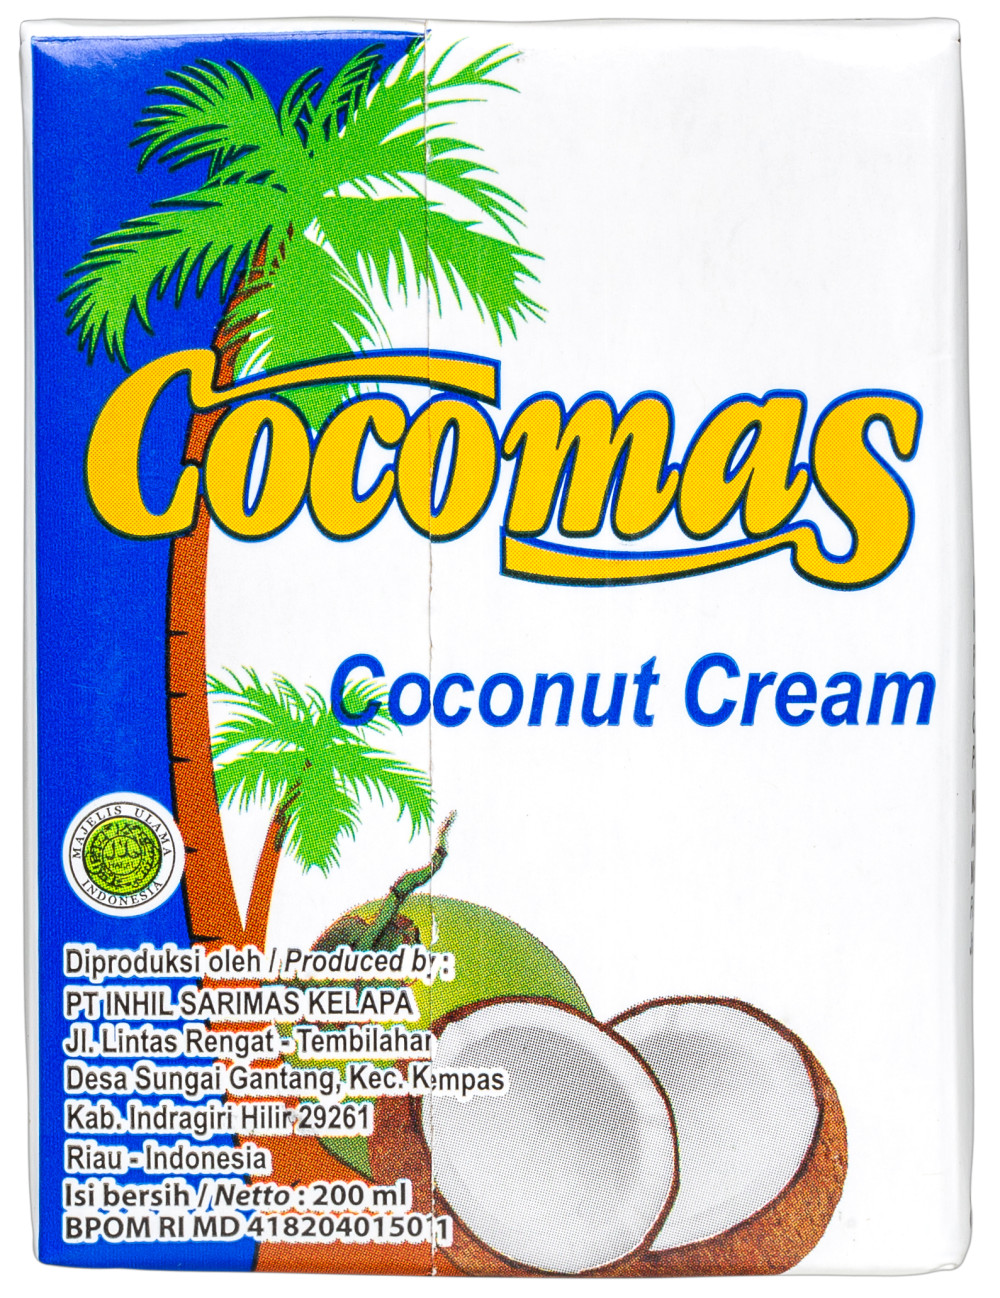 Cocomas Kókuszkrém 200ml